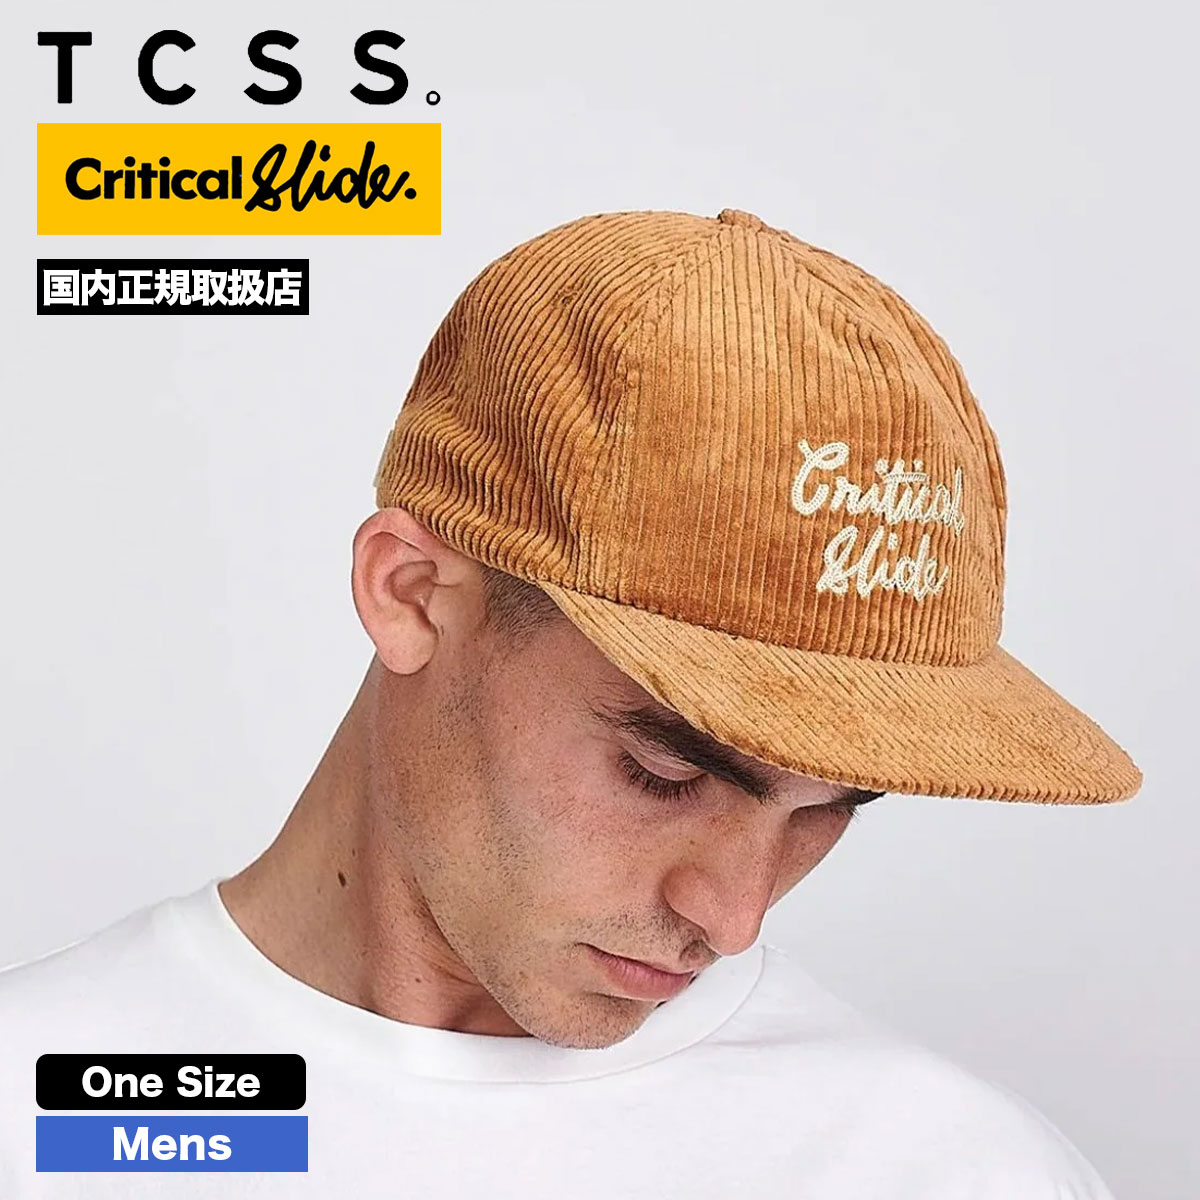 TCSS キャップ 帽子 メンズ コーデュロイ ブラウン BIG BOY CAP 人気ブランド CRITICAL SLIDE クリティカルスライド  (ティーシーエスエス) 通販【HW2311】-ジャックオーシャンスポーツ